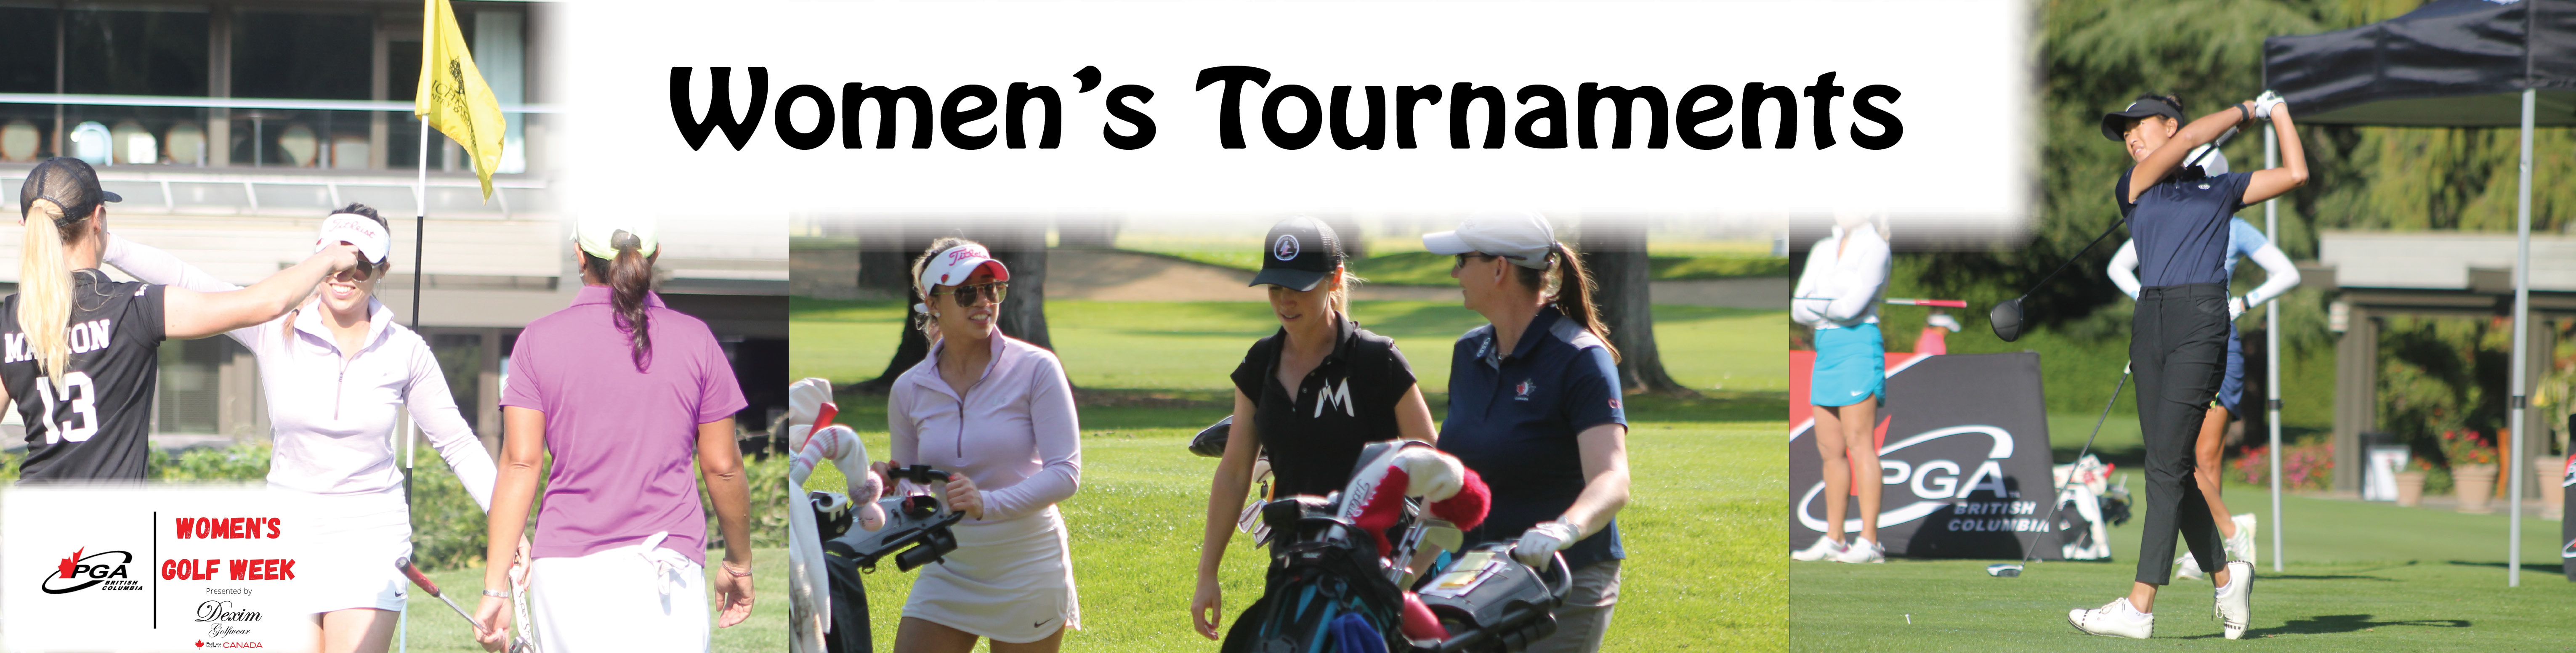 Womens Tournaments PGA of British Columbia